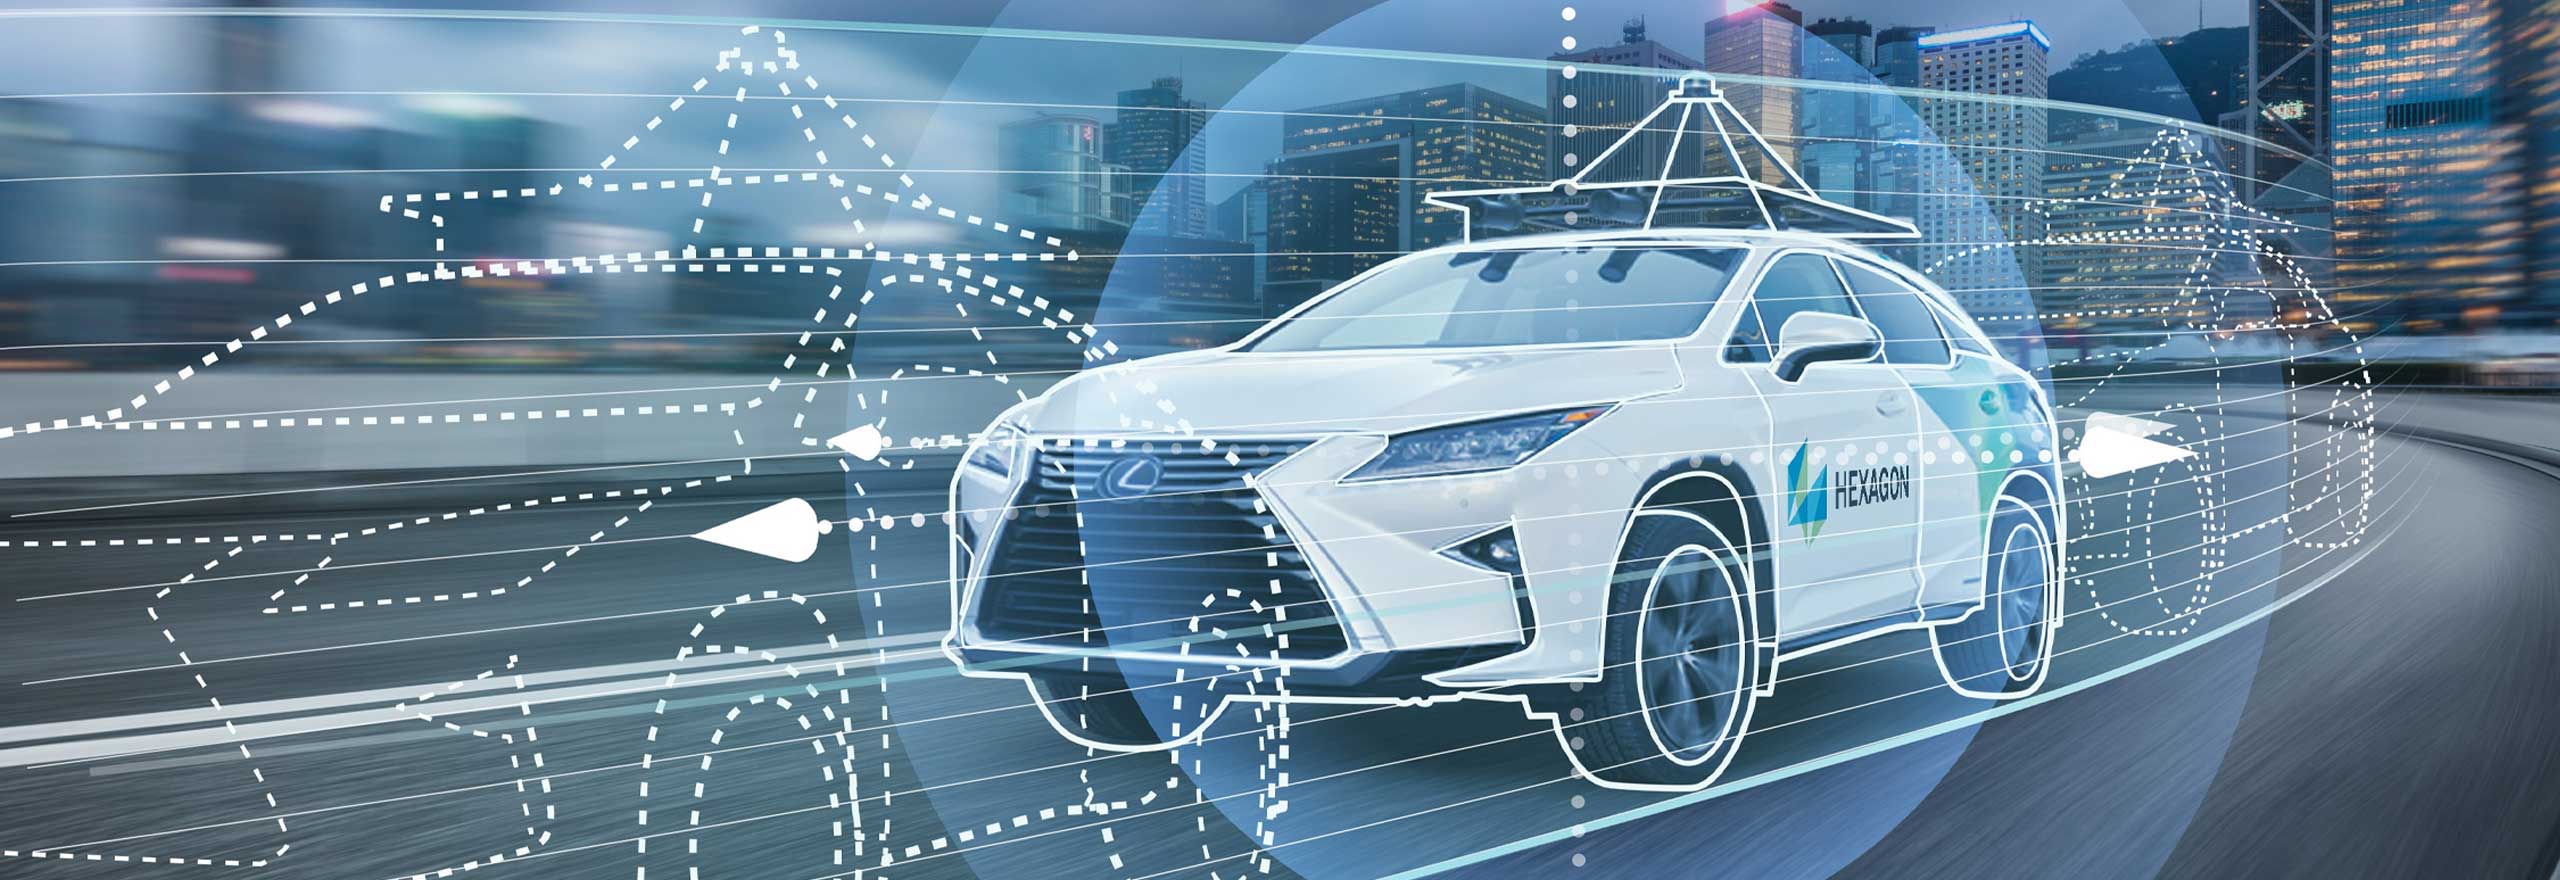 Ein autonomes Auto, das durch den Einsatz von Positionierungs- und Wahrnehmungstechnologien und Sensorfusion auf offener Straße unterwegs ist.